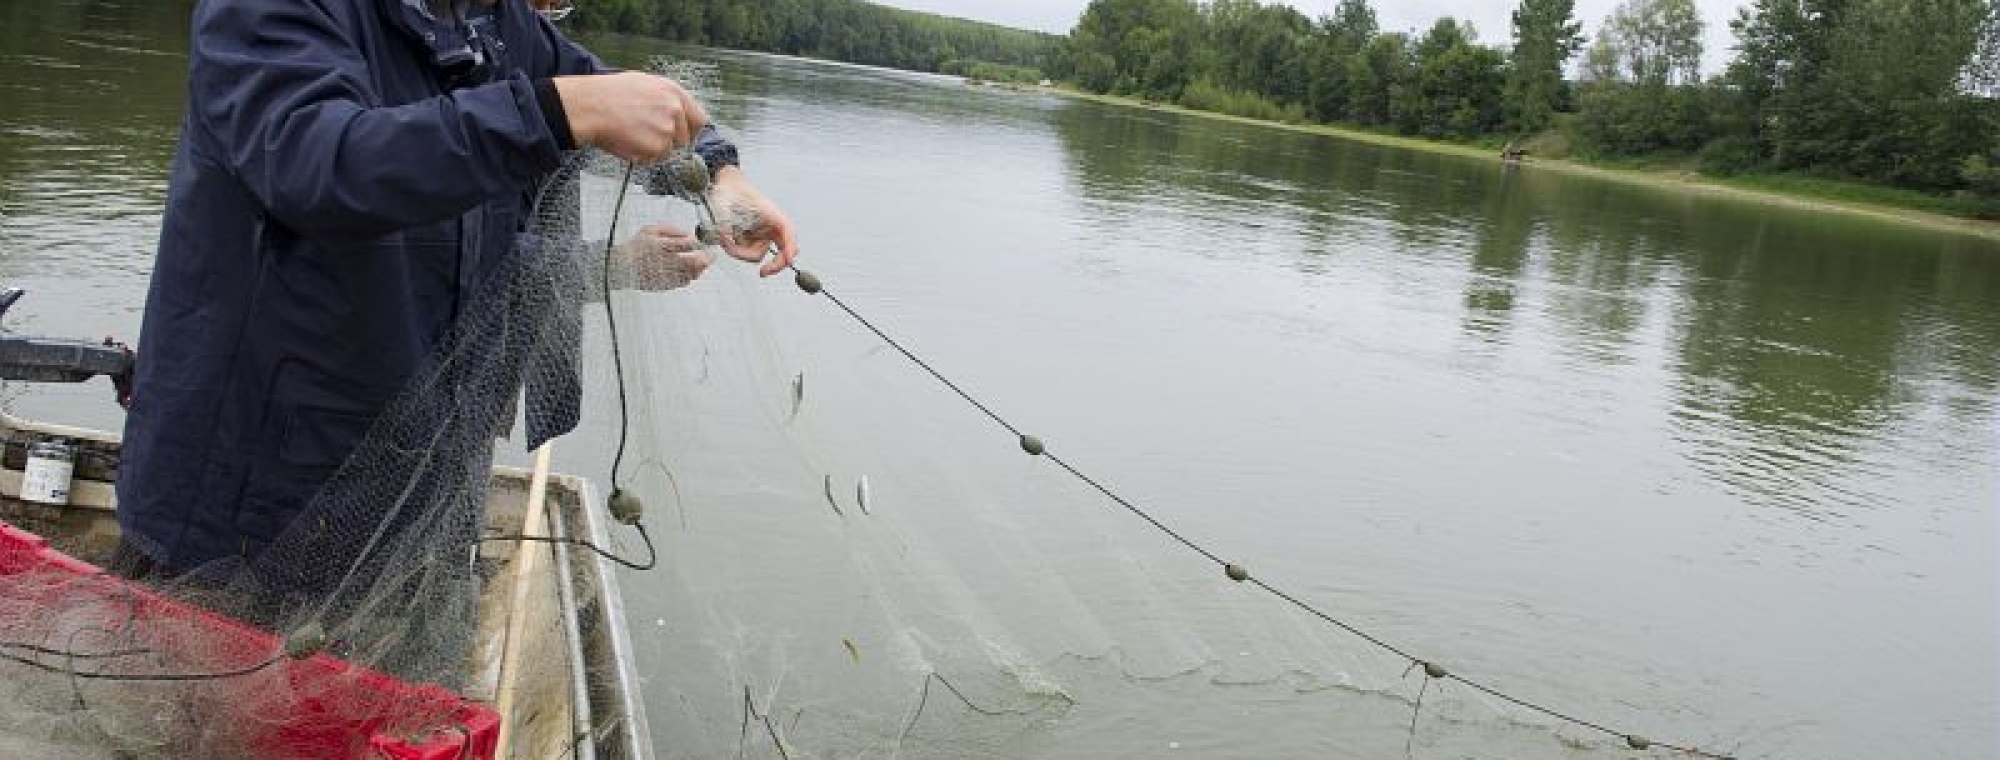  Suivi des alosons dans la Garonne en Lot-et-Garonne, LIFE alose, pêche du 18 Juillet 2011 : pêche de jour au filet araignée